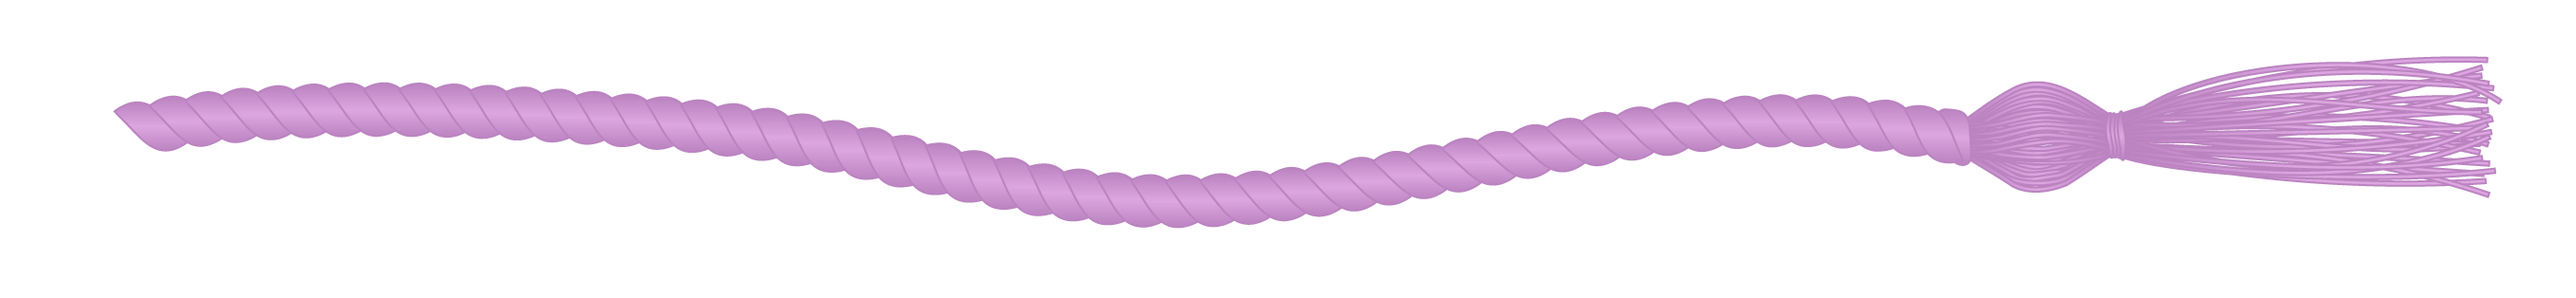 Lavender commencement cord